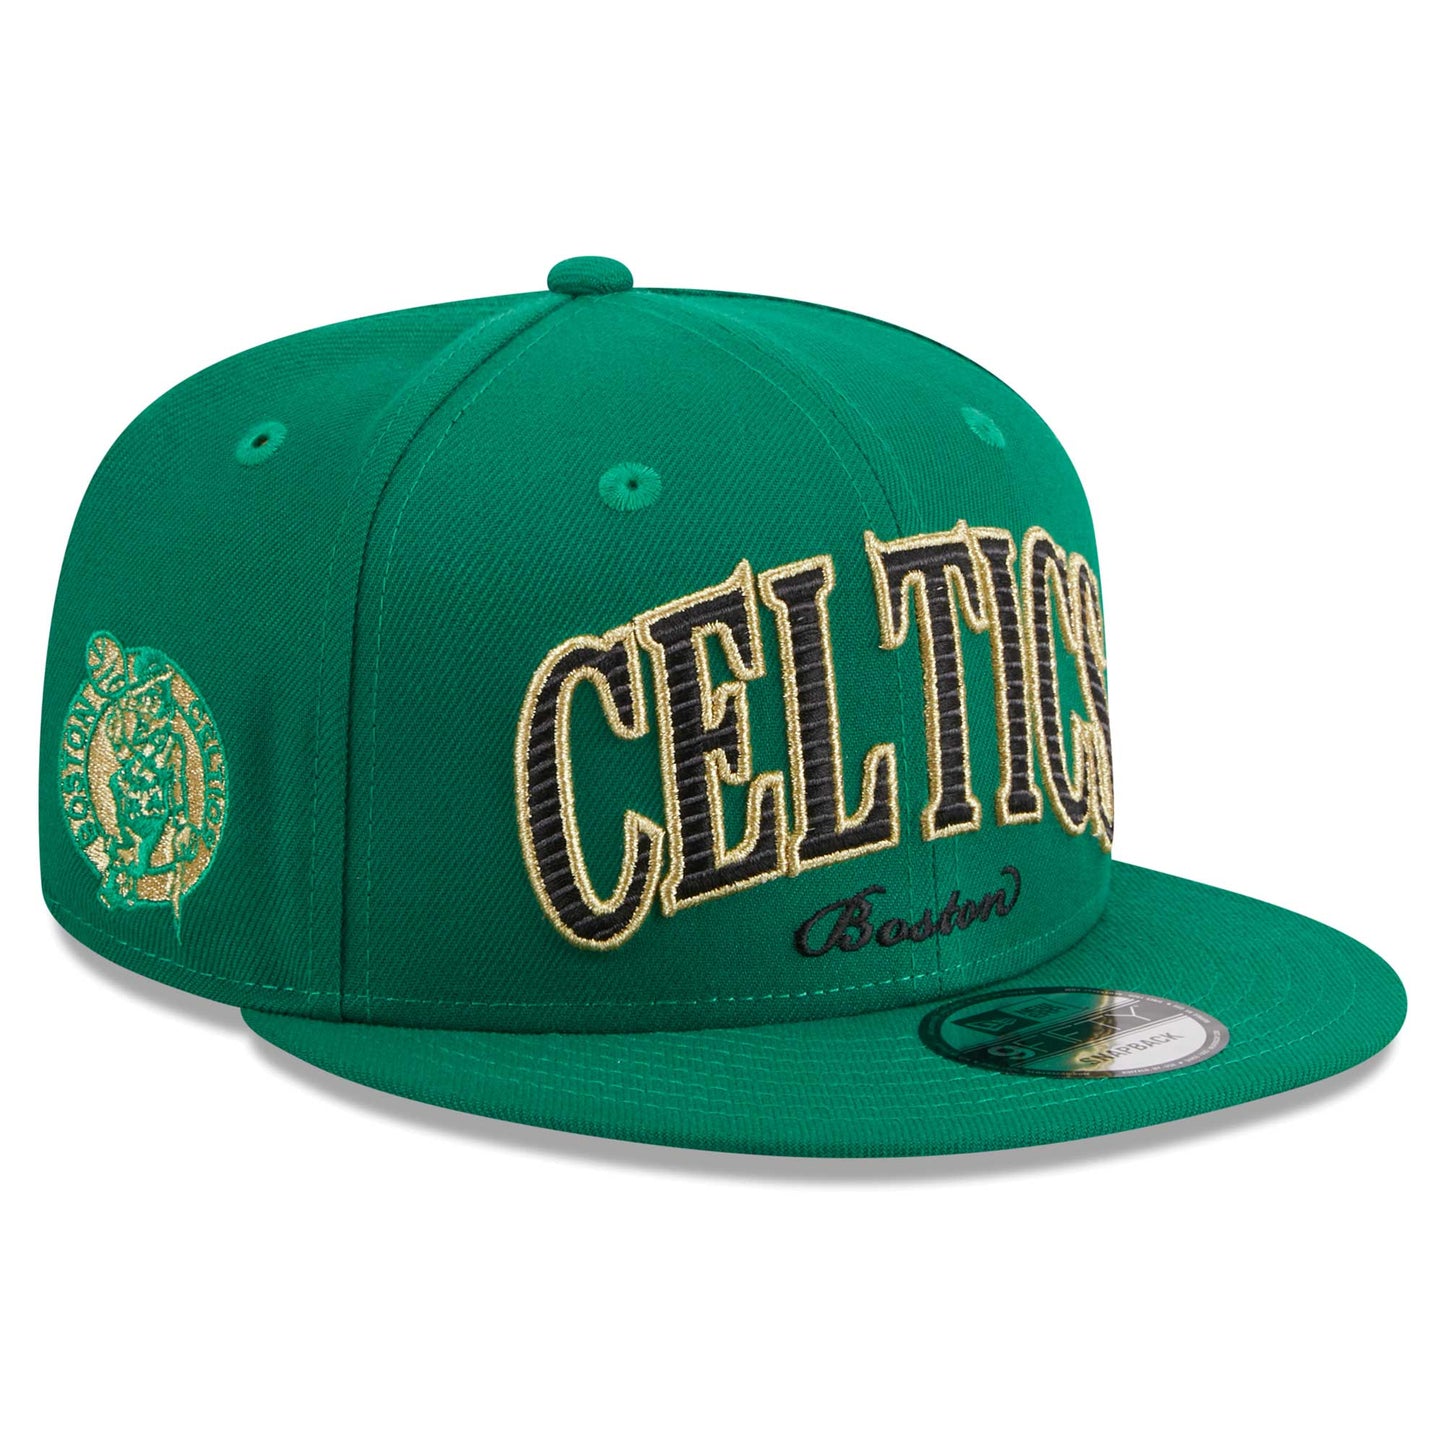 Boston Celtics New Era Golden Tall Text 9FIFTY Snapback Hat - Kelly Green